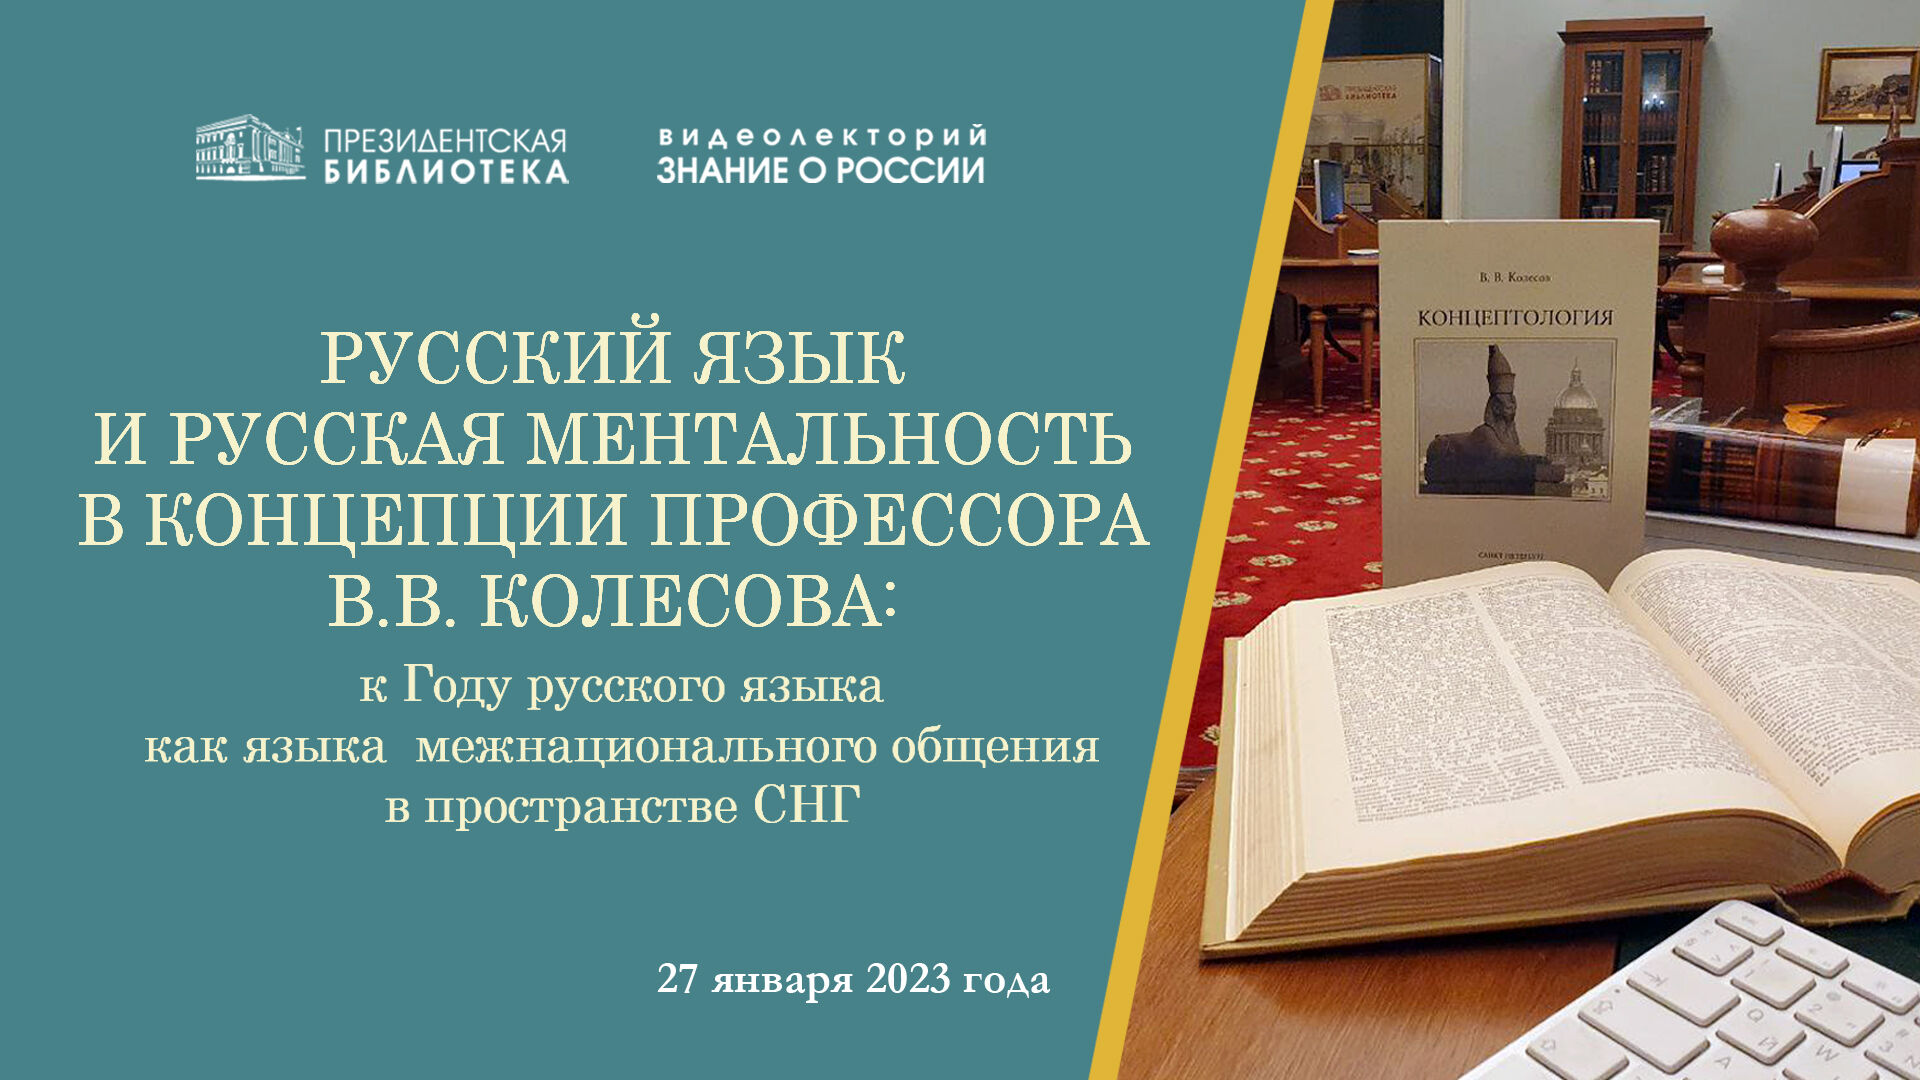 Президентская библиотека открывает цикл лекций, посвящённых русскому языку